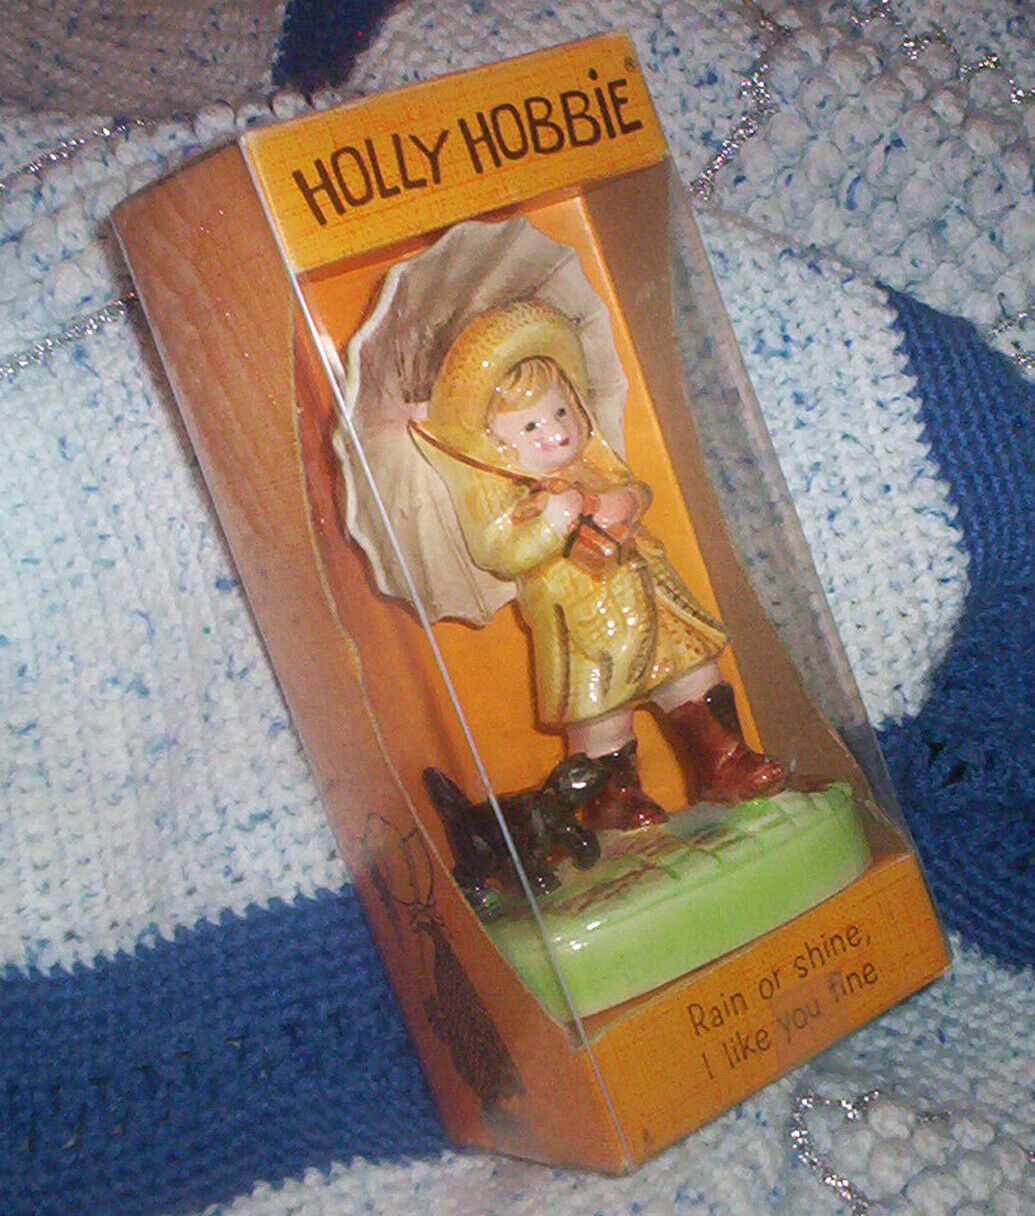 Vintage Holly Hobbie Figurine - Rain or Shine, I Like You Fine Figurine w Box